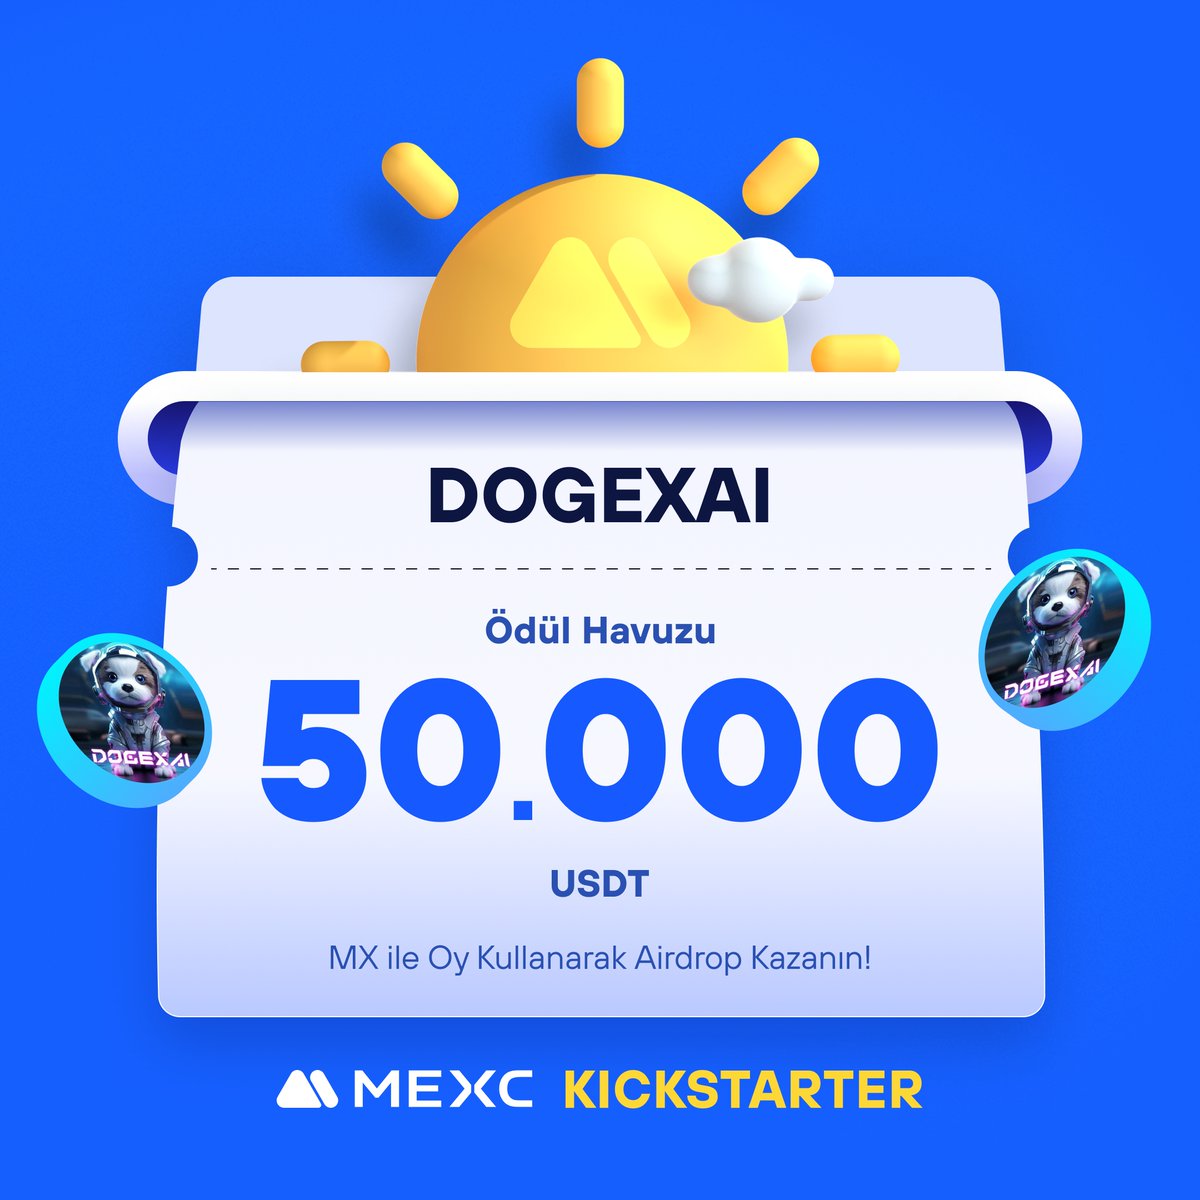 🚀 #MEXCKickstarter - @DOGE_XAI #DOGEXAI Projesi için Oy Kullanın, 50.000 $USDT Airdrop Kazanın!

🗳️ Oylama Tarihi: 9 Mayıs 2024 09.00 - 10 Mayıs 2024 08.50

📌 Ayrıntılar: mexctr.info/4dz3940

#MEXCTürkiye #MXToken #MX #BTC